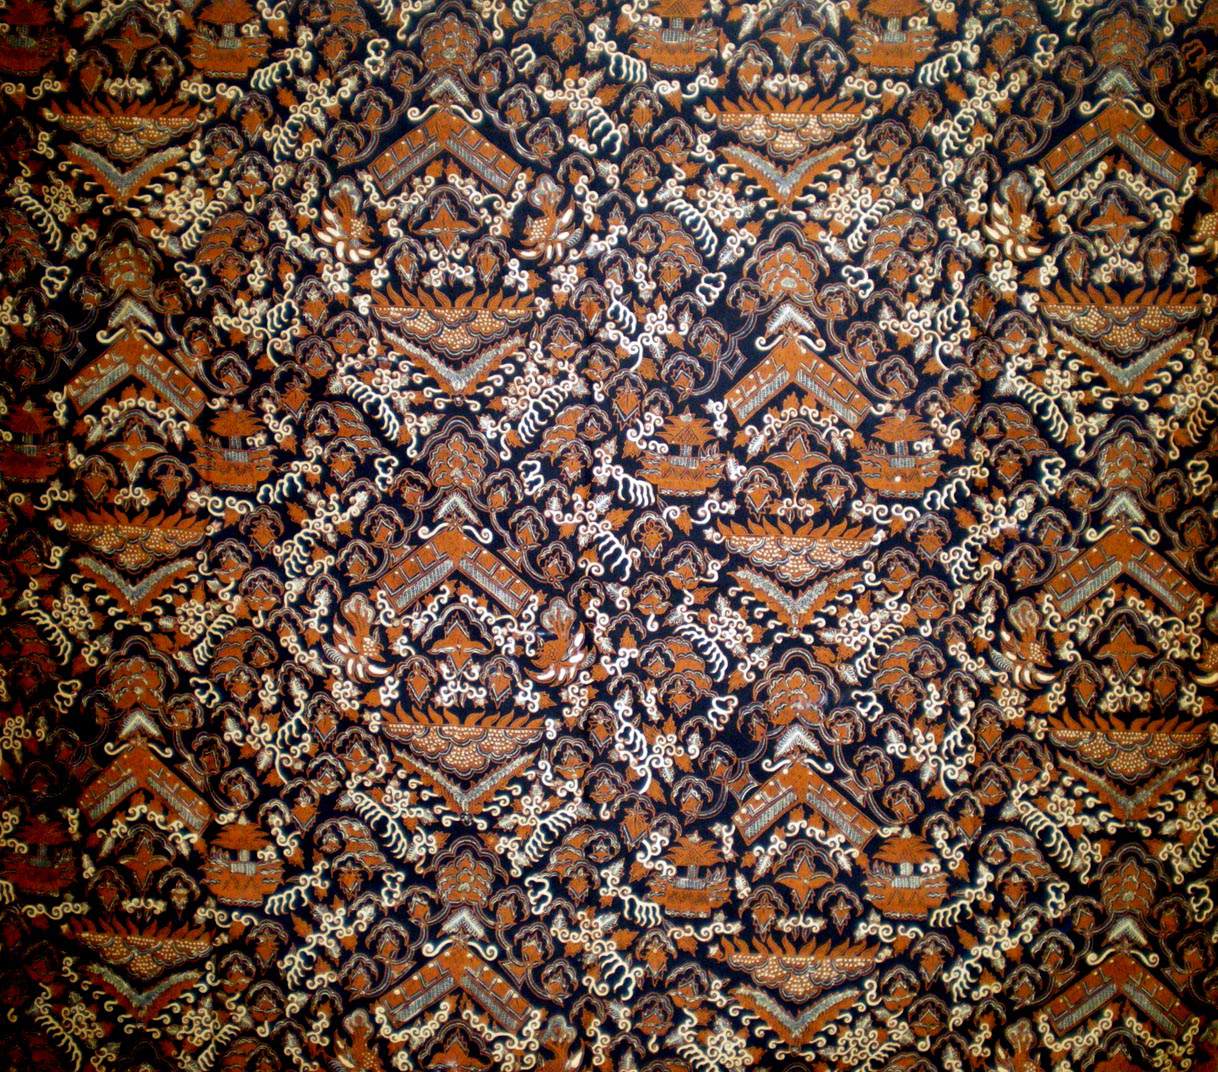 Macfull Blog: Wallpaper batik grey